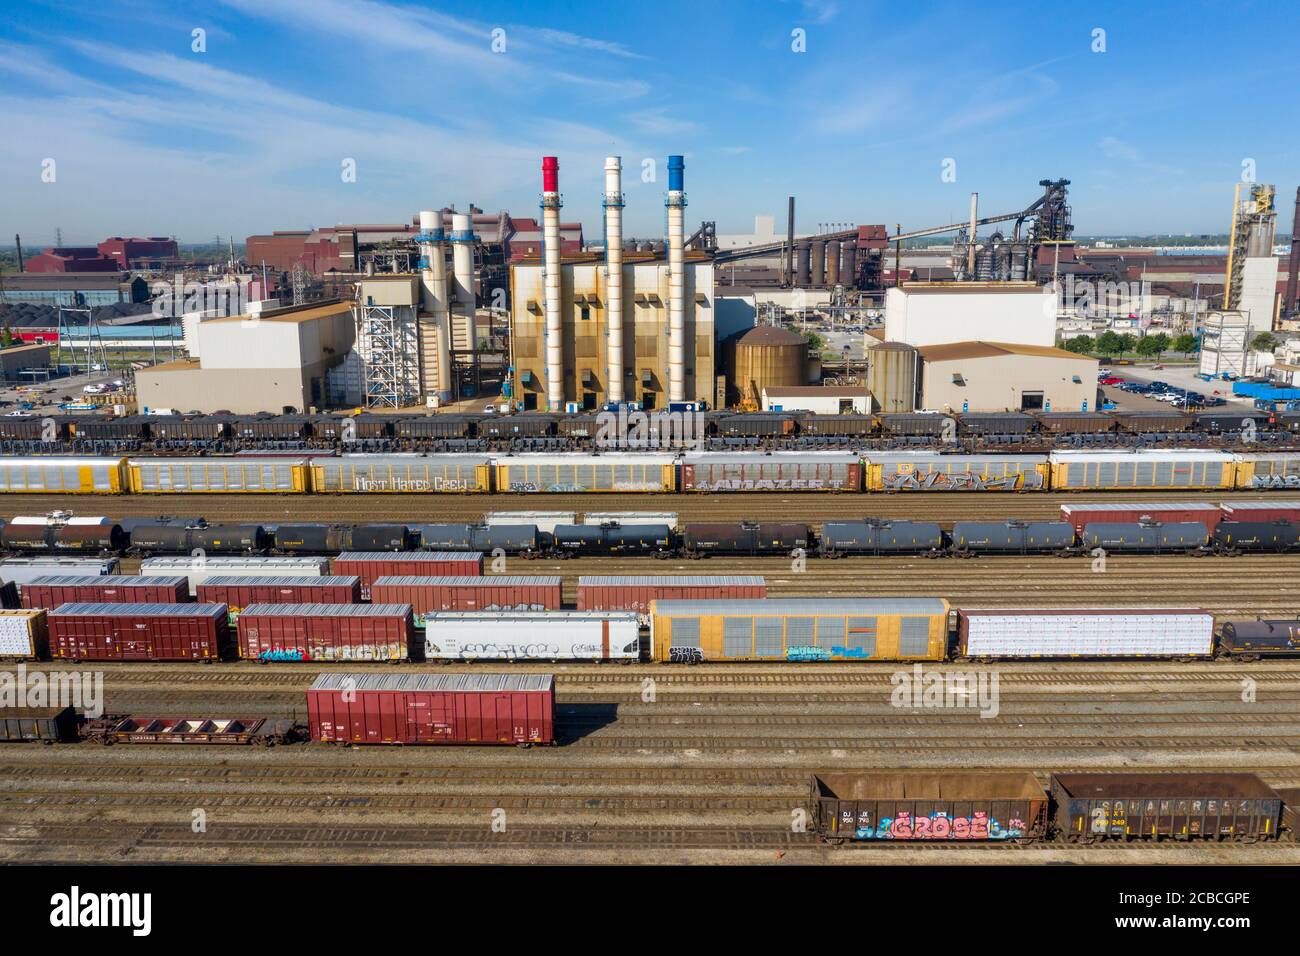 Dearborn, Michigan - le chantier ferroviaire CSX adjacent à l'immense complexe industriel de Ford Rouge. Les cheminées rouges, blanches et bleues font partie du Dea Banque D'Images